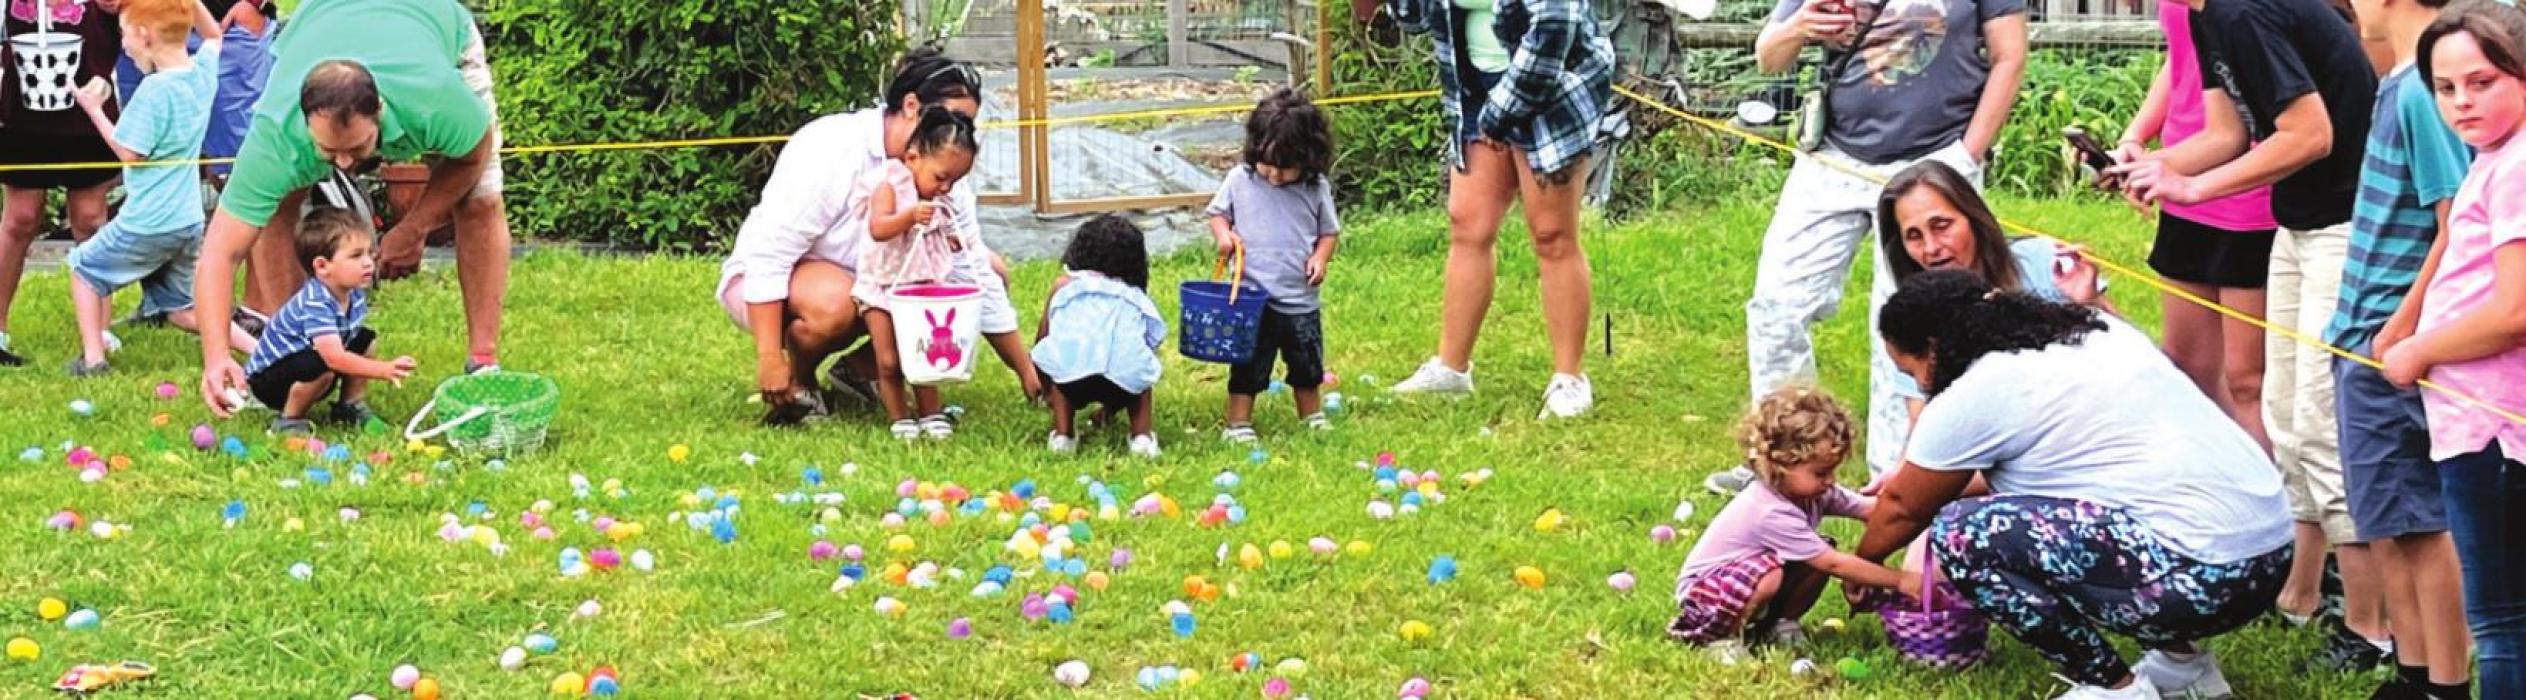 Easter at the Barnyard